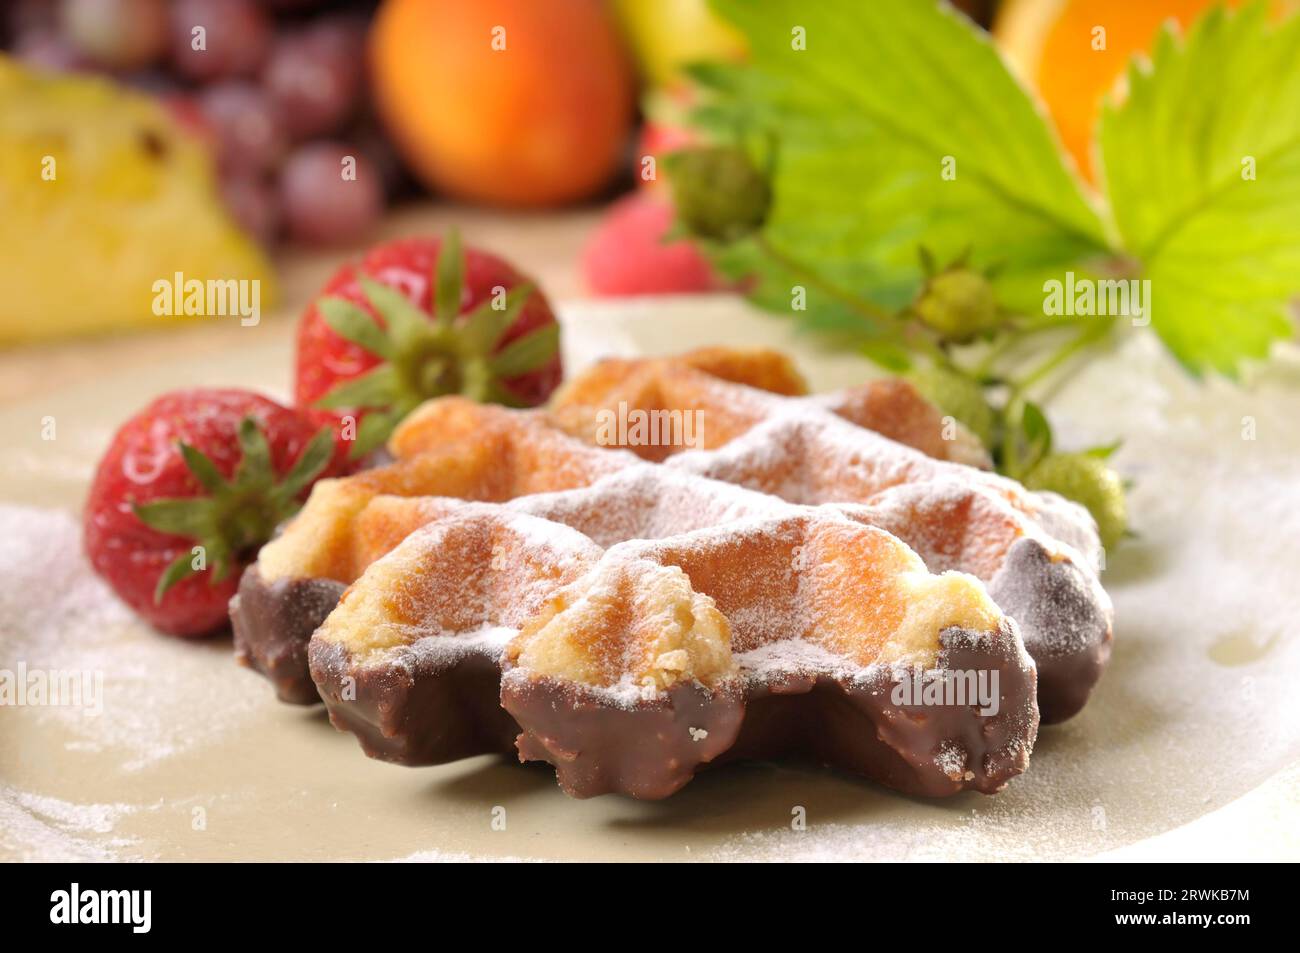 Waffle with fruit Stock Photo